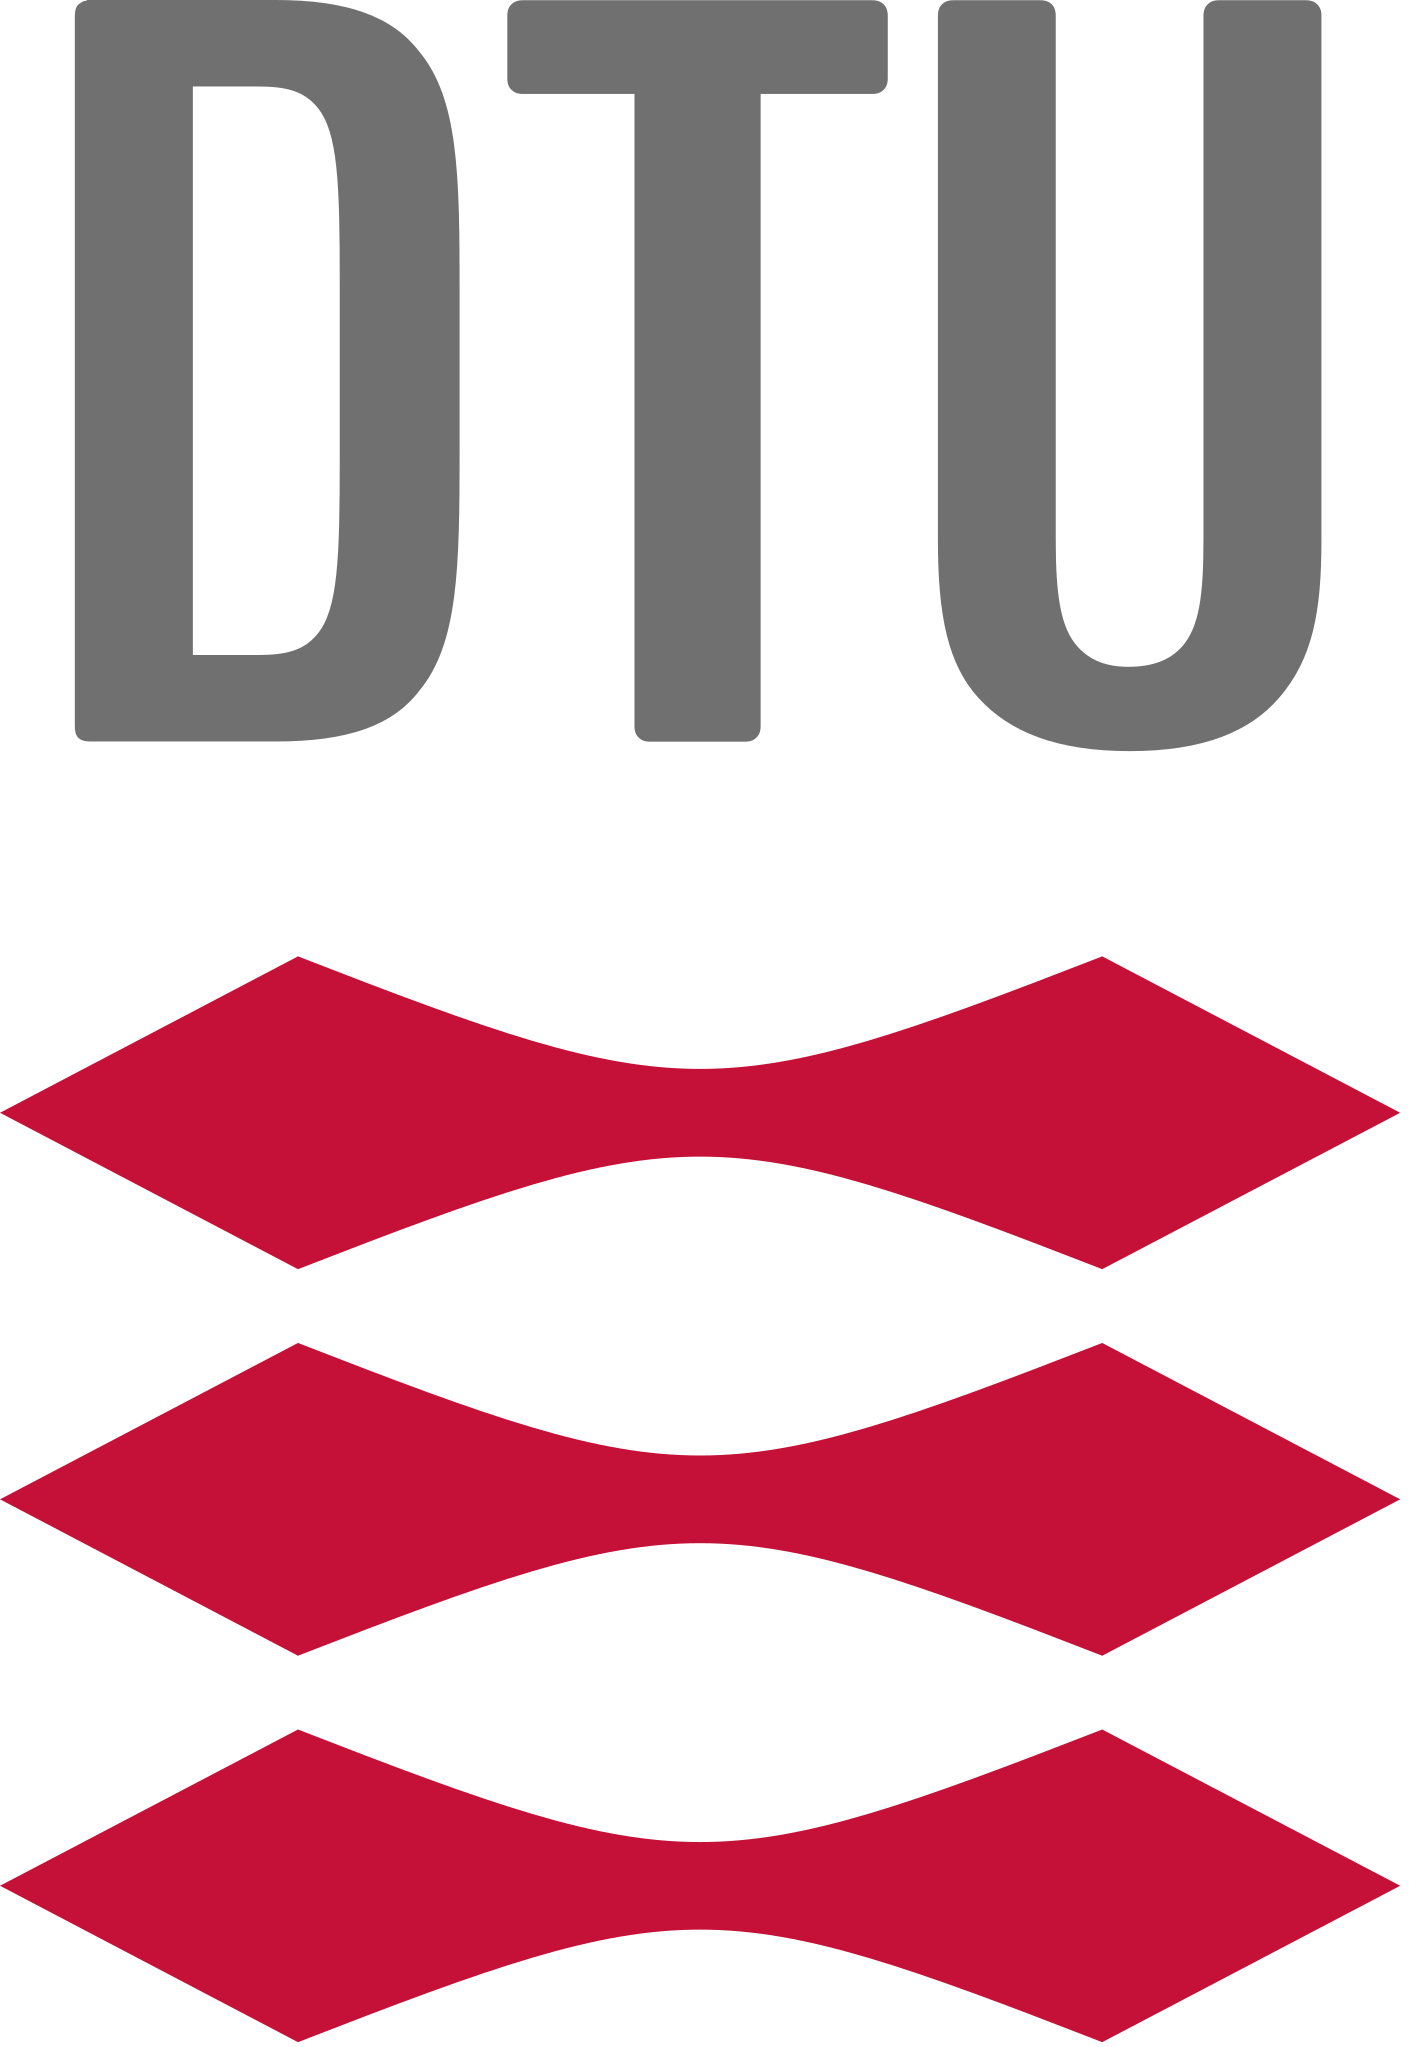 Danmarks_Tekniske_Universitet_(logo).svg.png